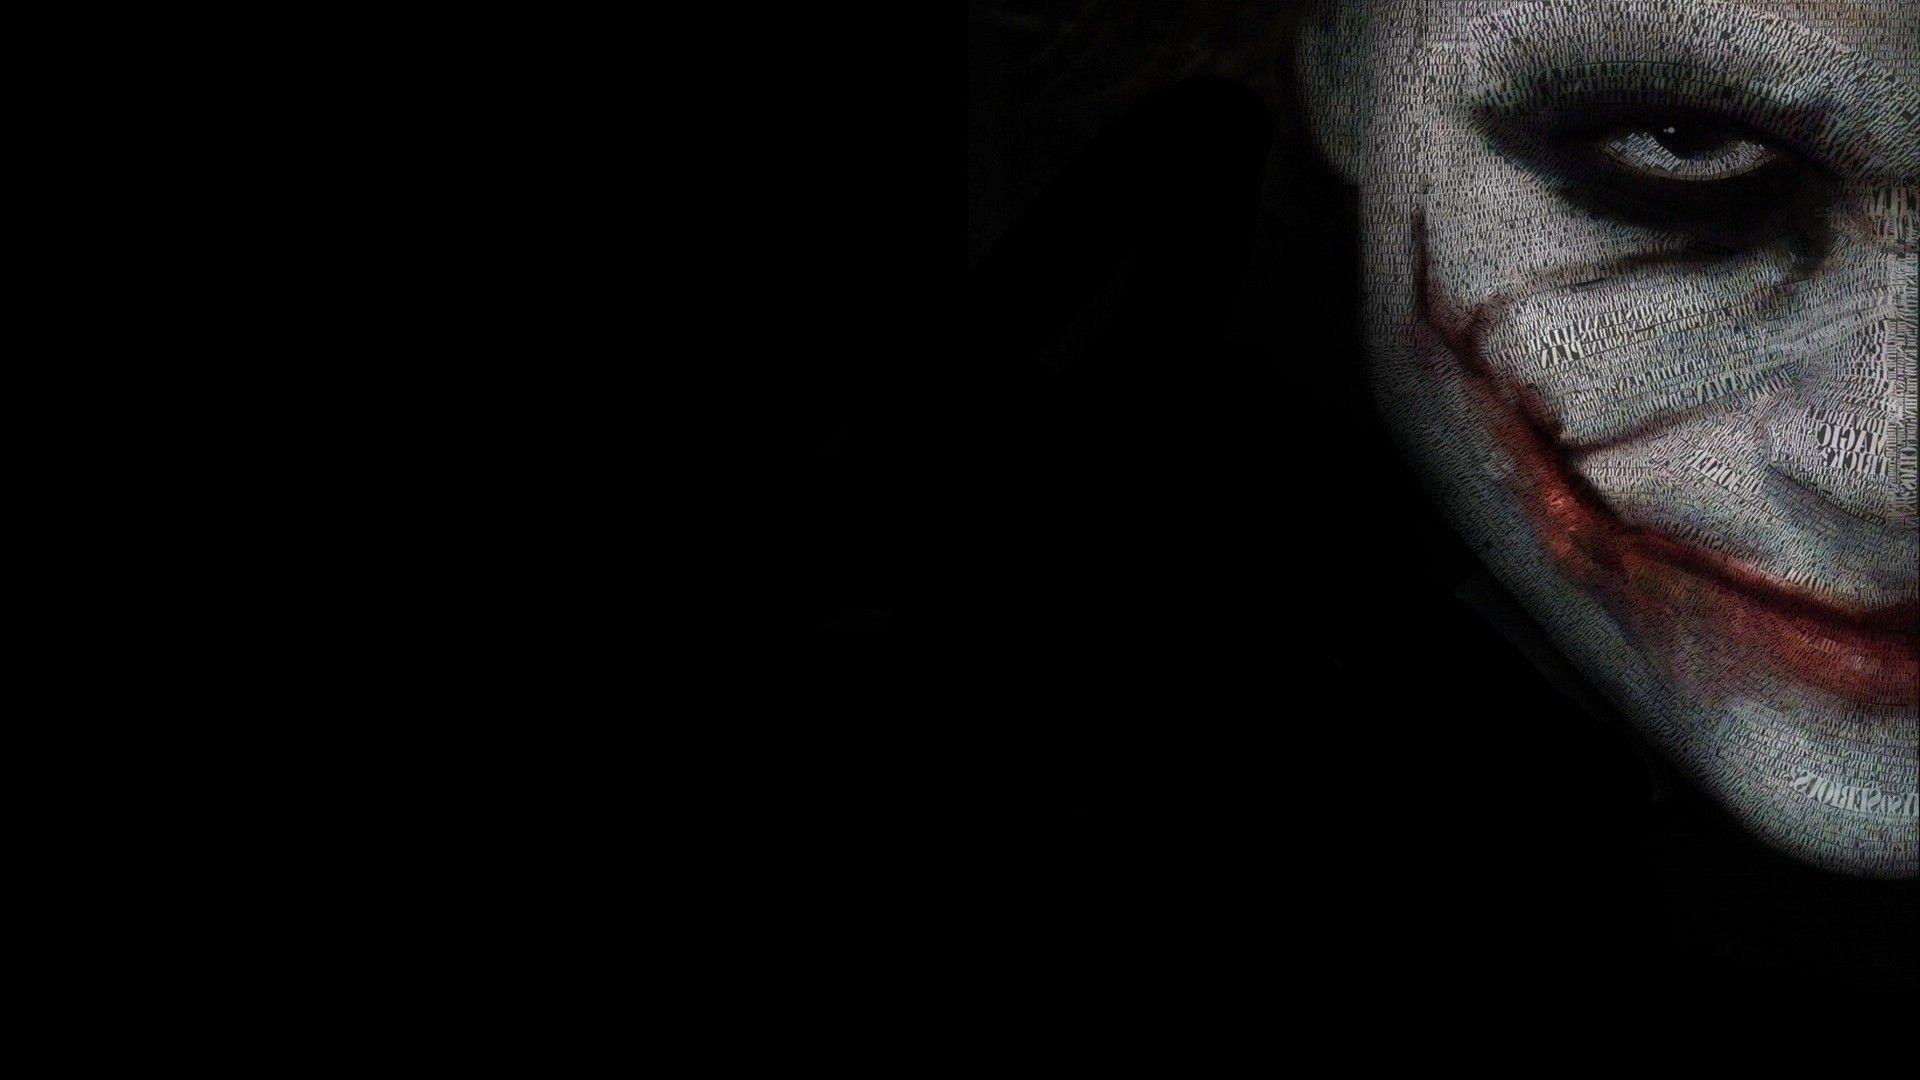 The Image of Batman The Joker Villain HD Wallpaper